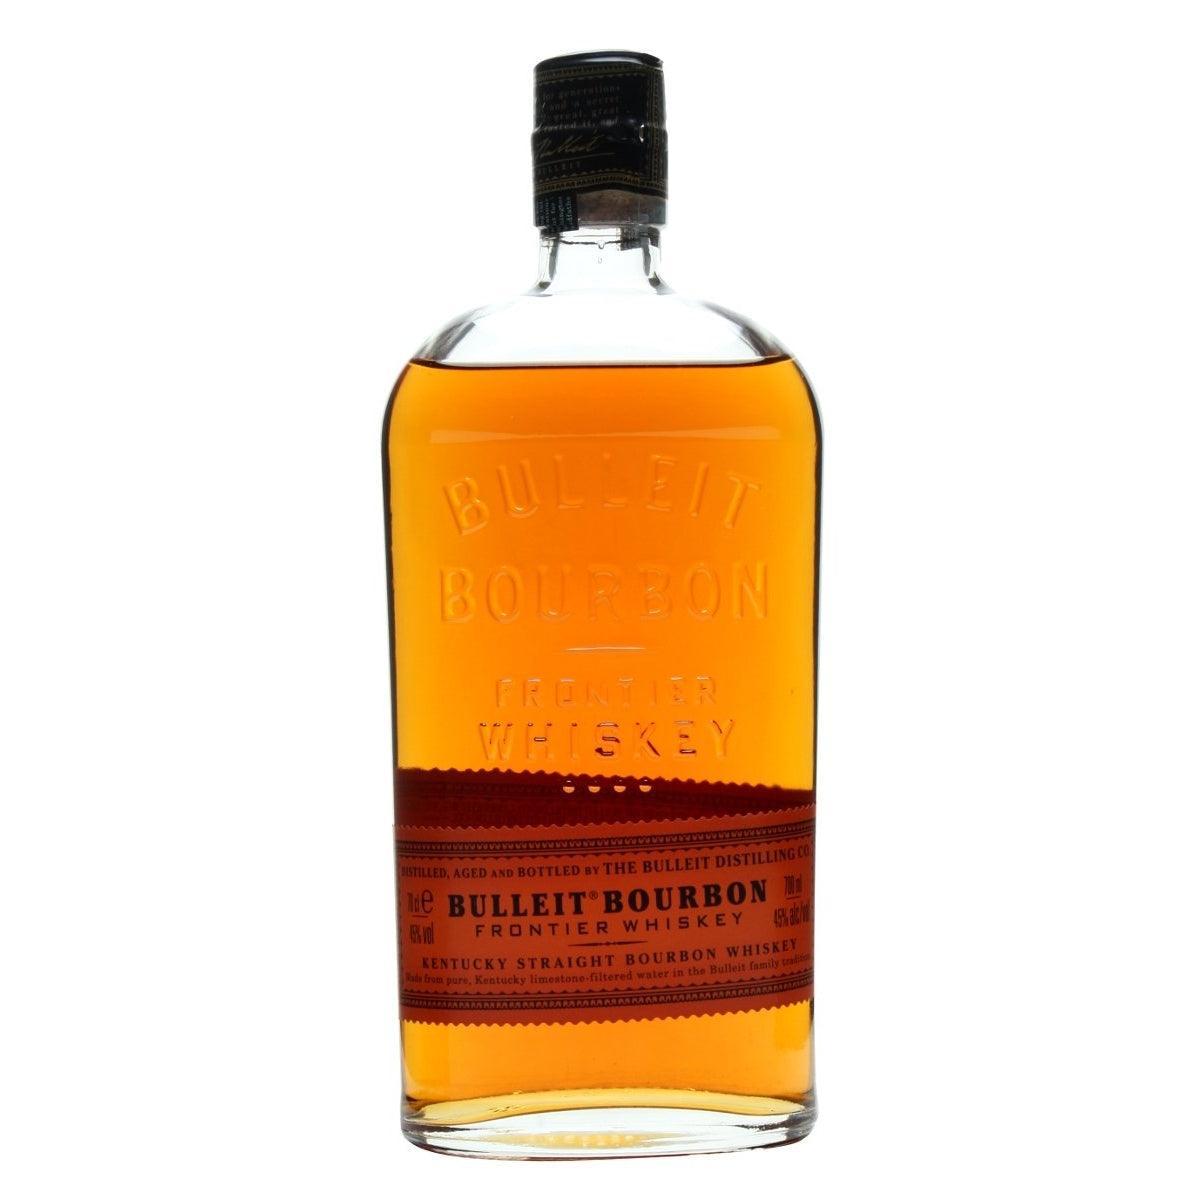 Selected image for Bulleit Bourbon Burbon, 0.7l